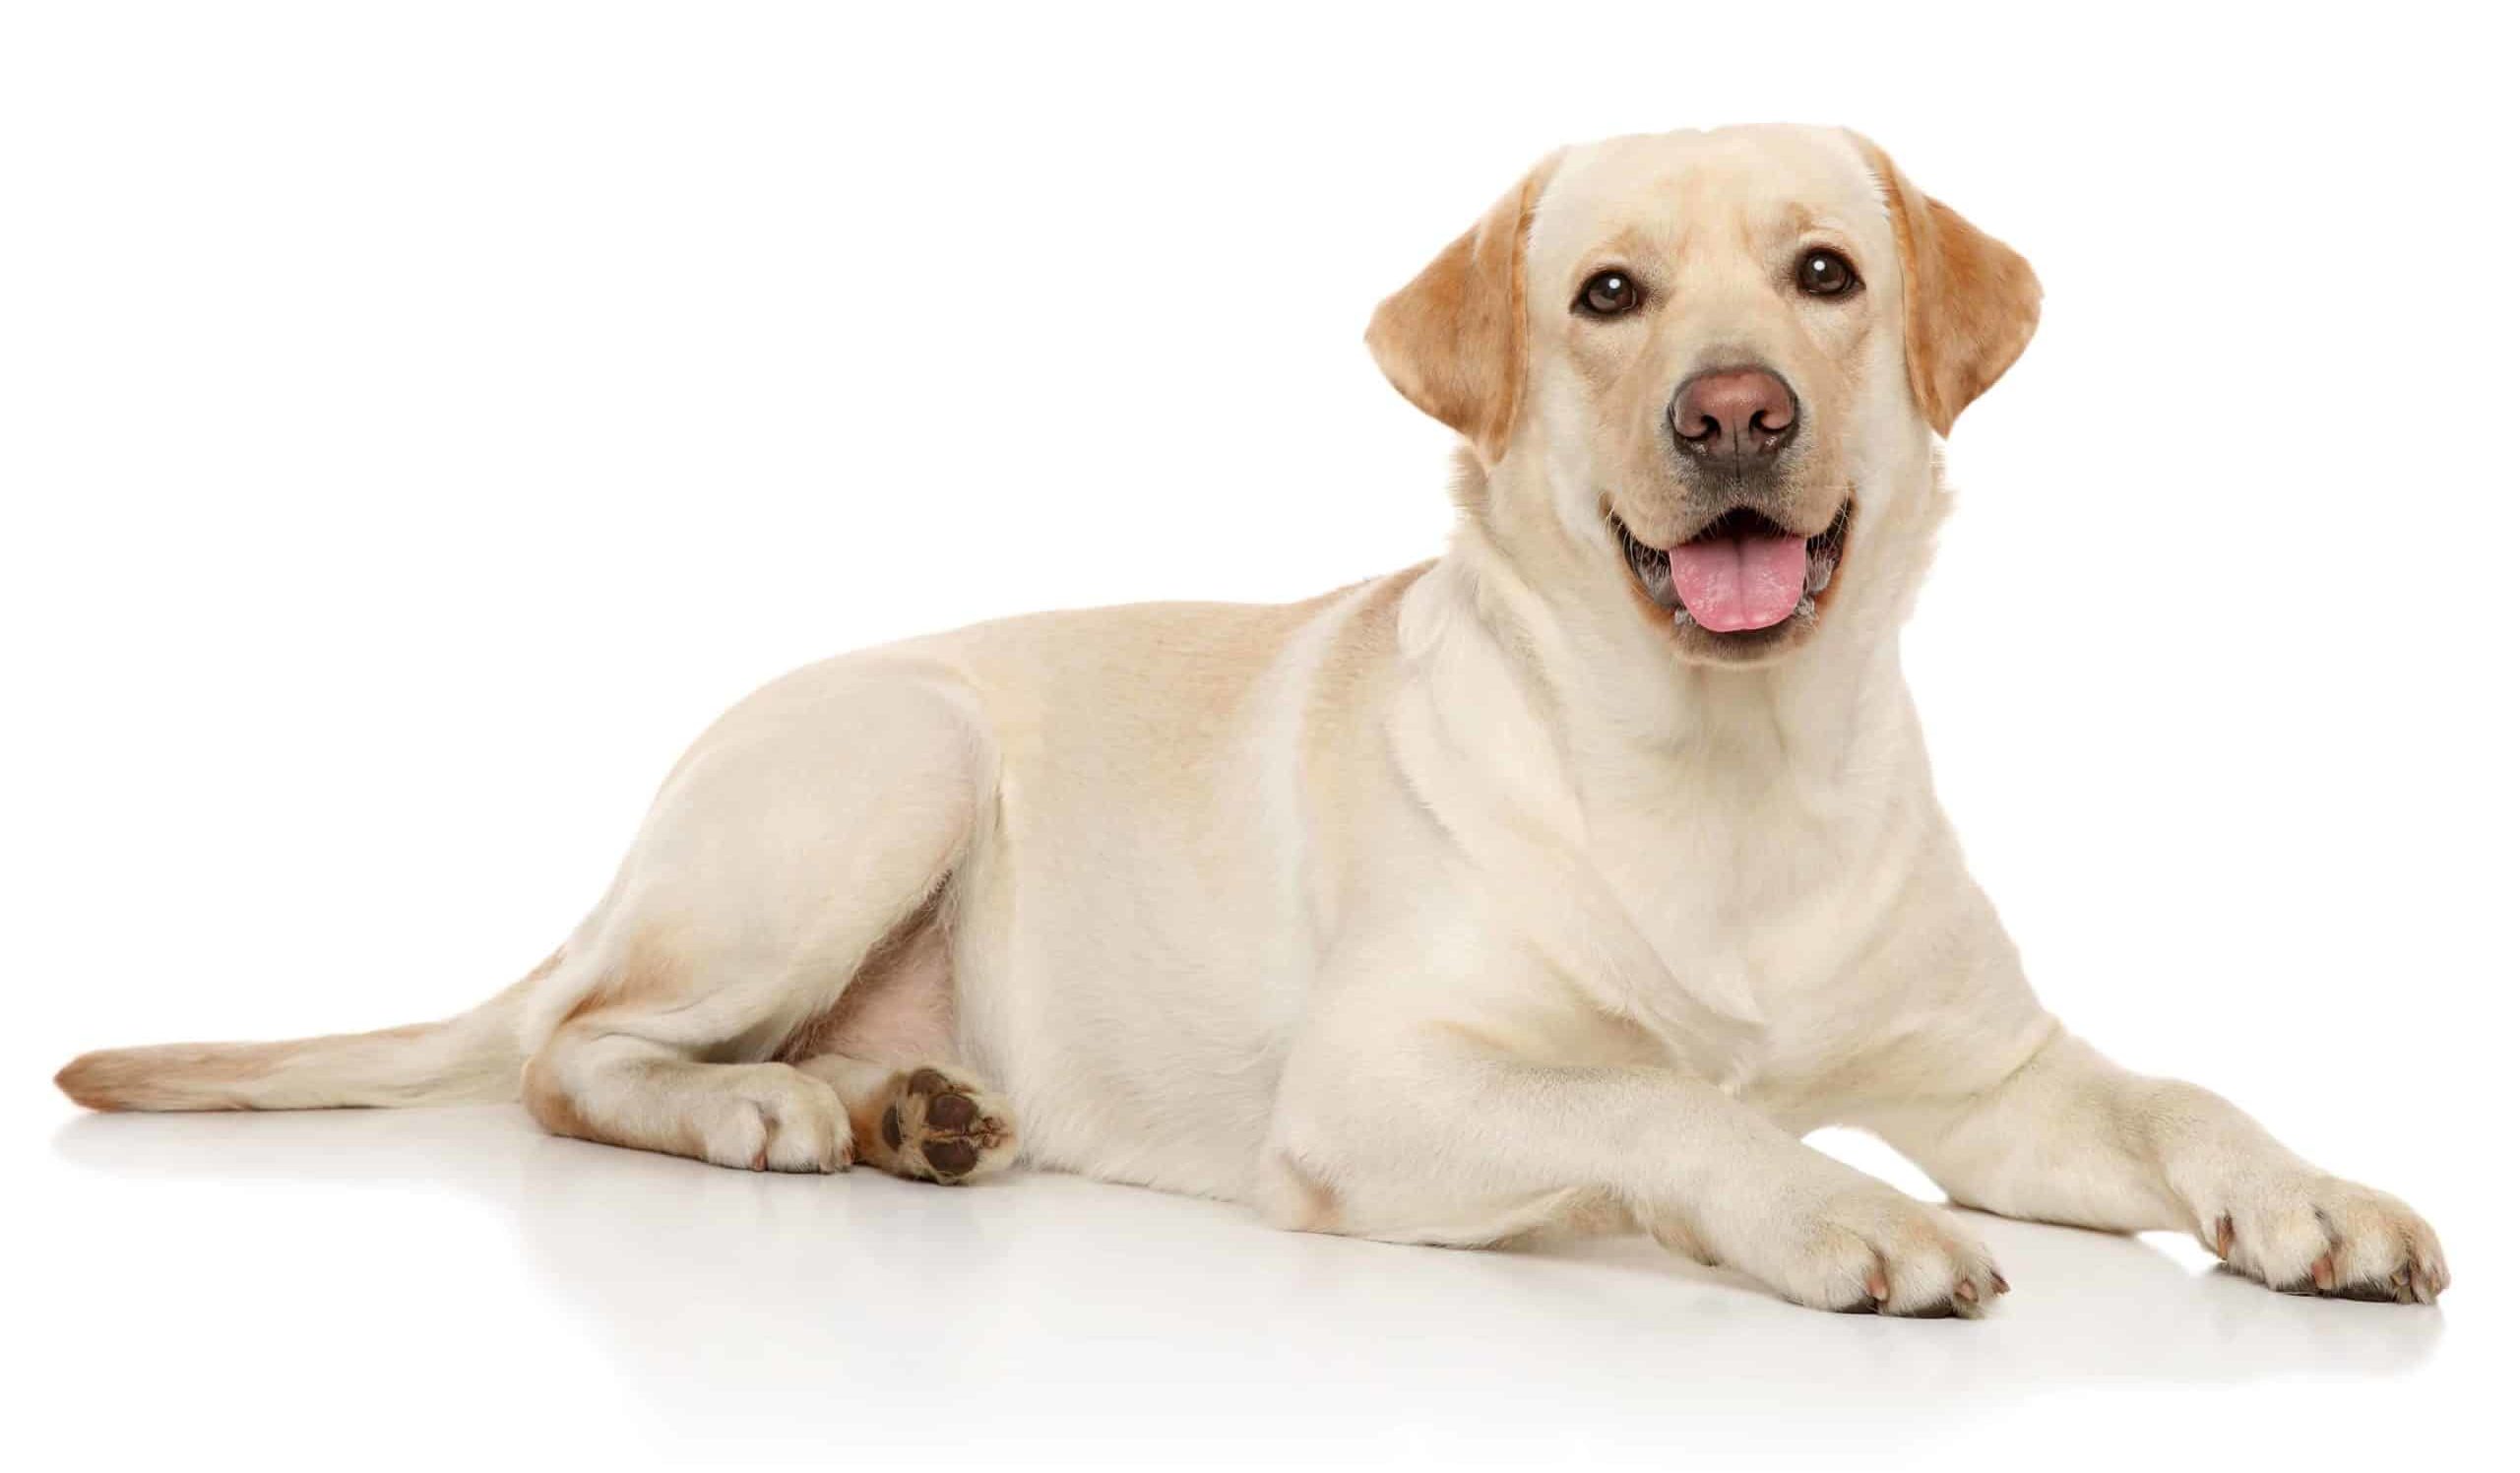 Labrador Retriever on white background. Labrador Retrievers are included on the DogsBestLife.com smartest dog breeds list.